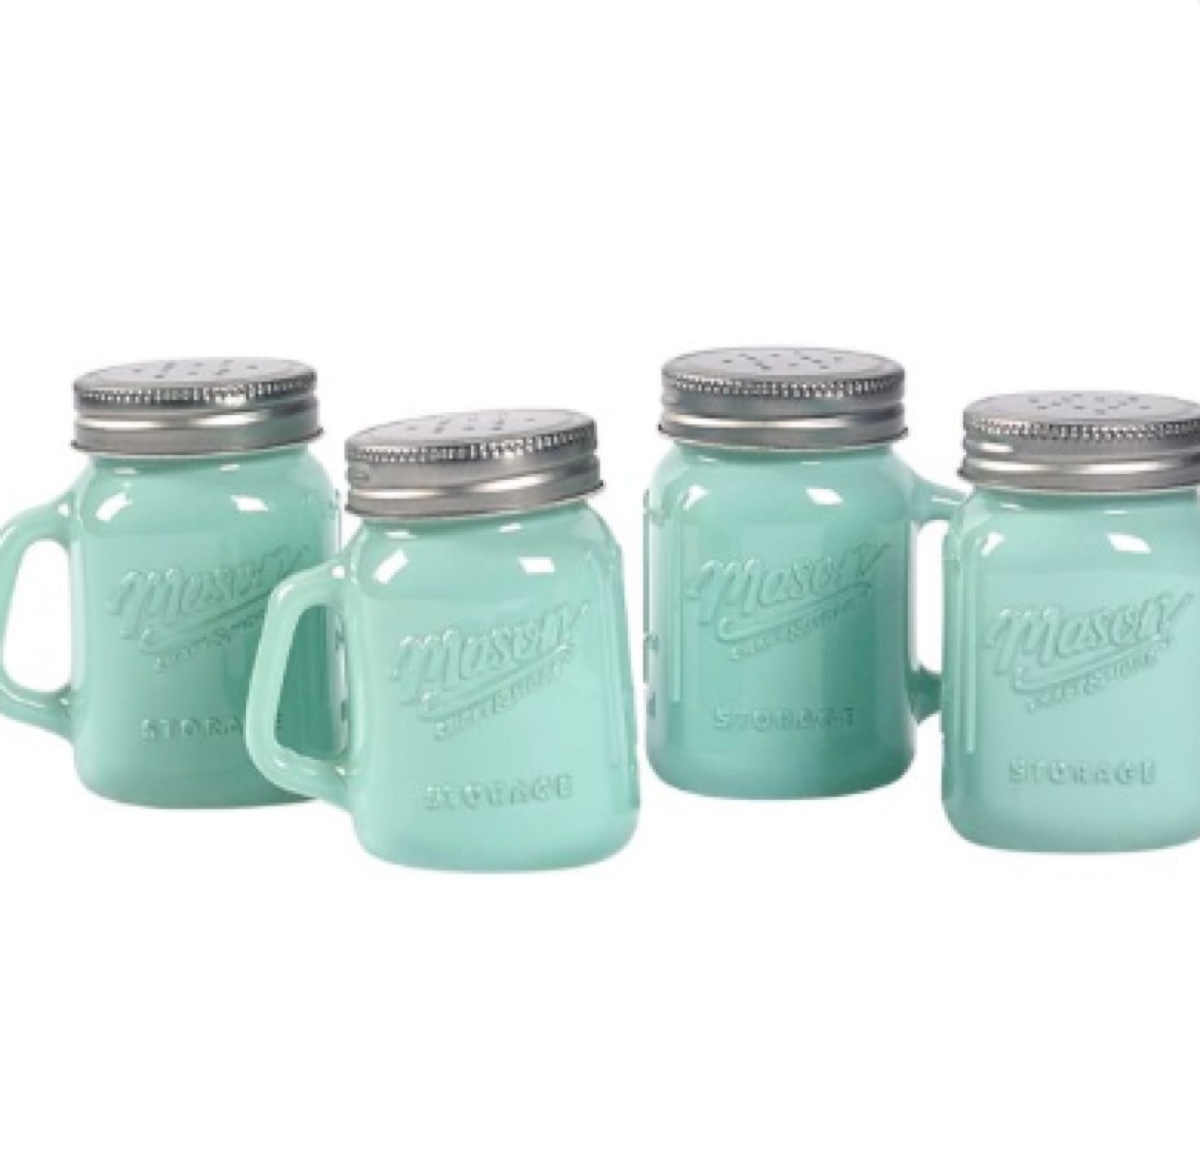 mason jar shakers, amazing summer buys